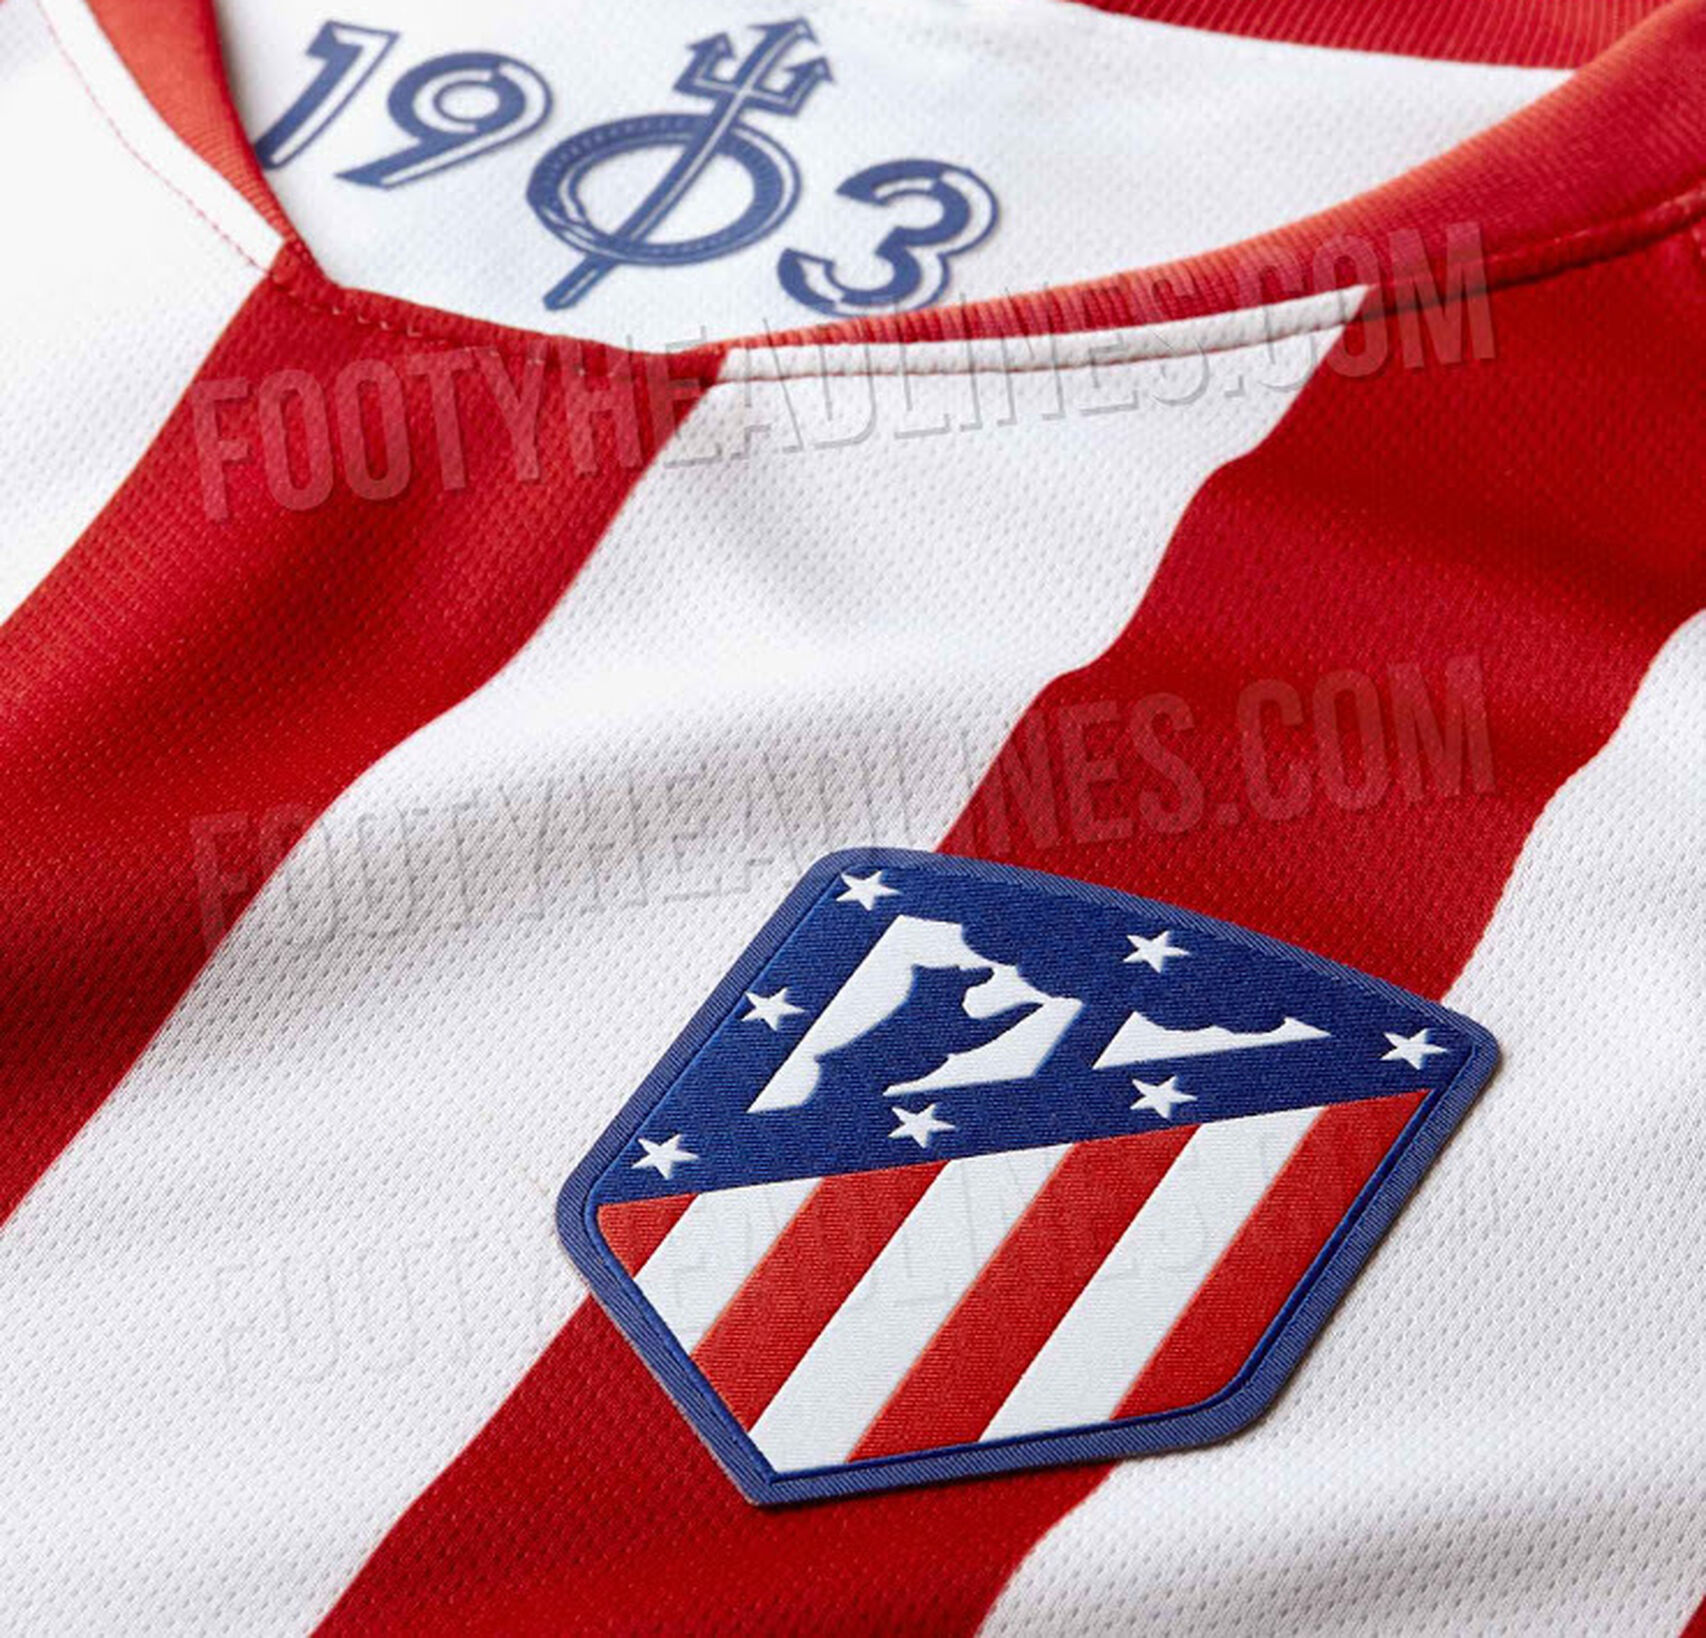 Cuello de la camiseta del Atlético de Madrid para la temporada 2019-2020 (Footyheadlines.com)